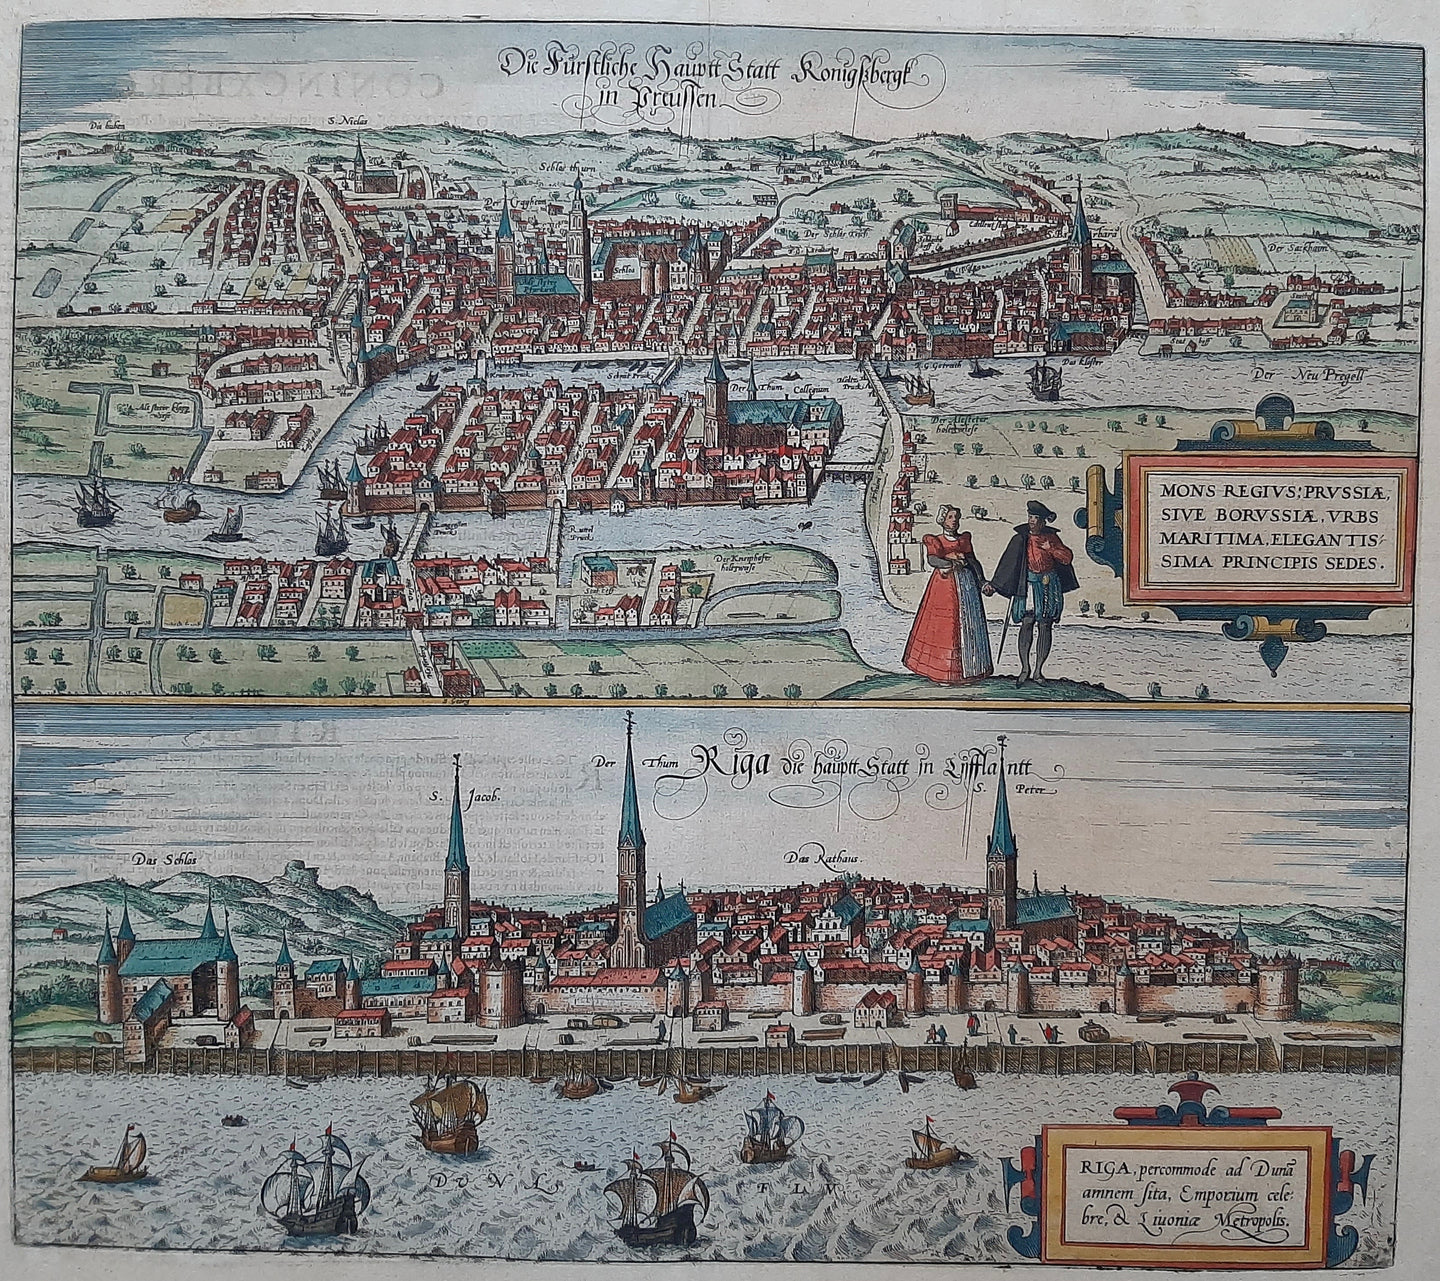 Letland Riga Latvia Rusland Kaliningrad (Königsberg) Russia - G Braun & F Hogenberg - 1588